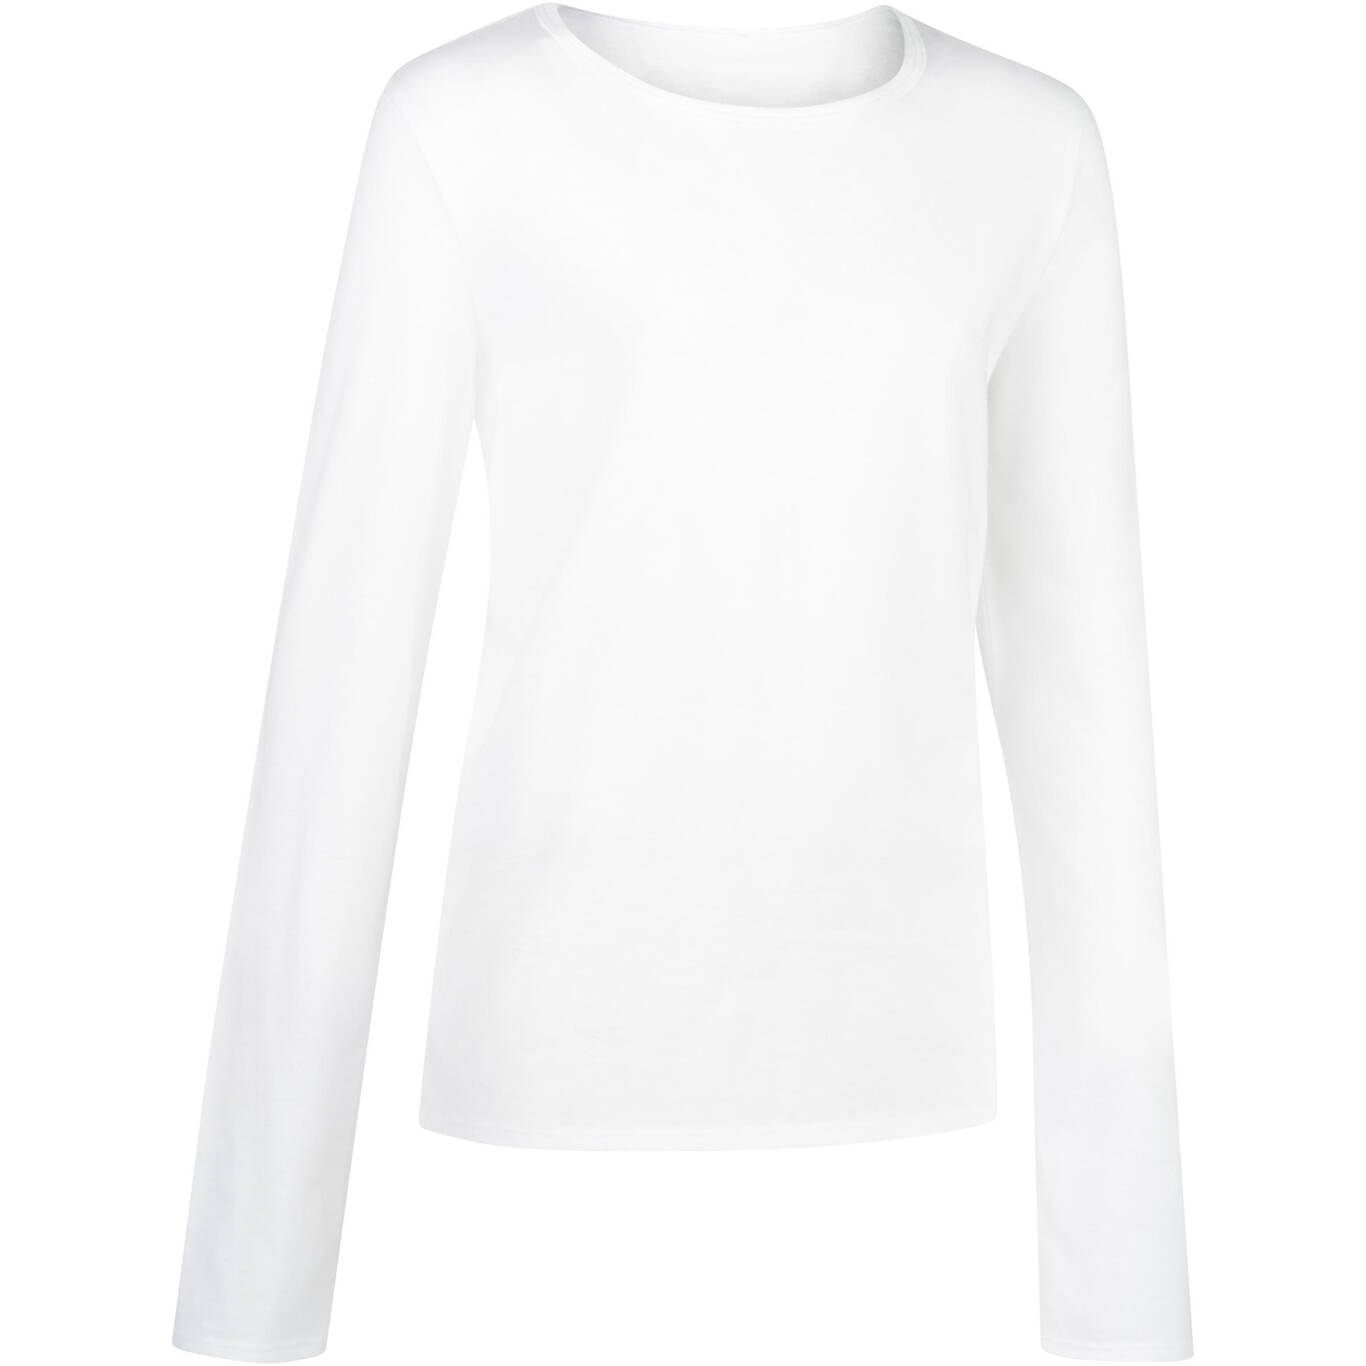 Kids' Basic Long-Sleeved T-Shirt - White